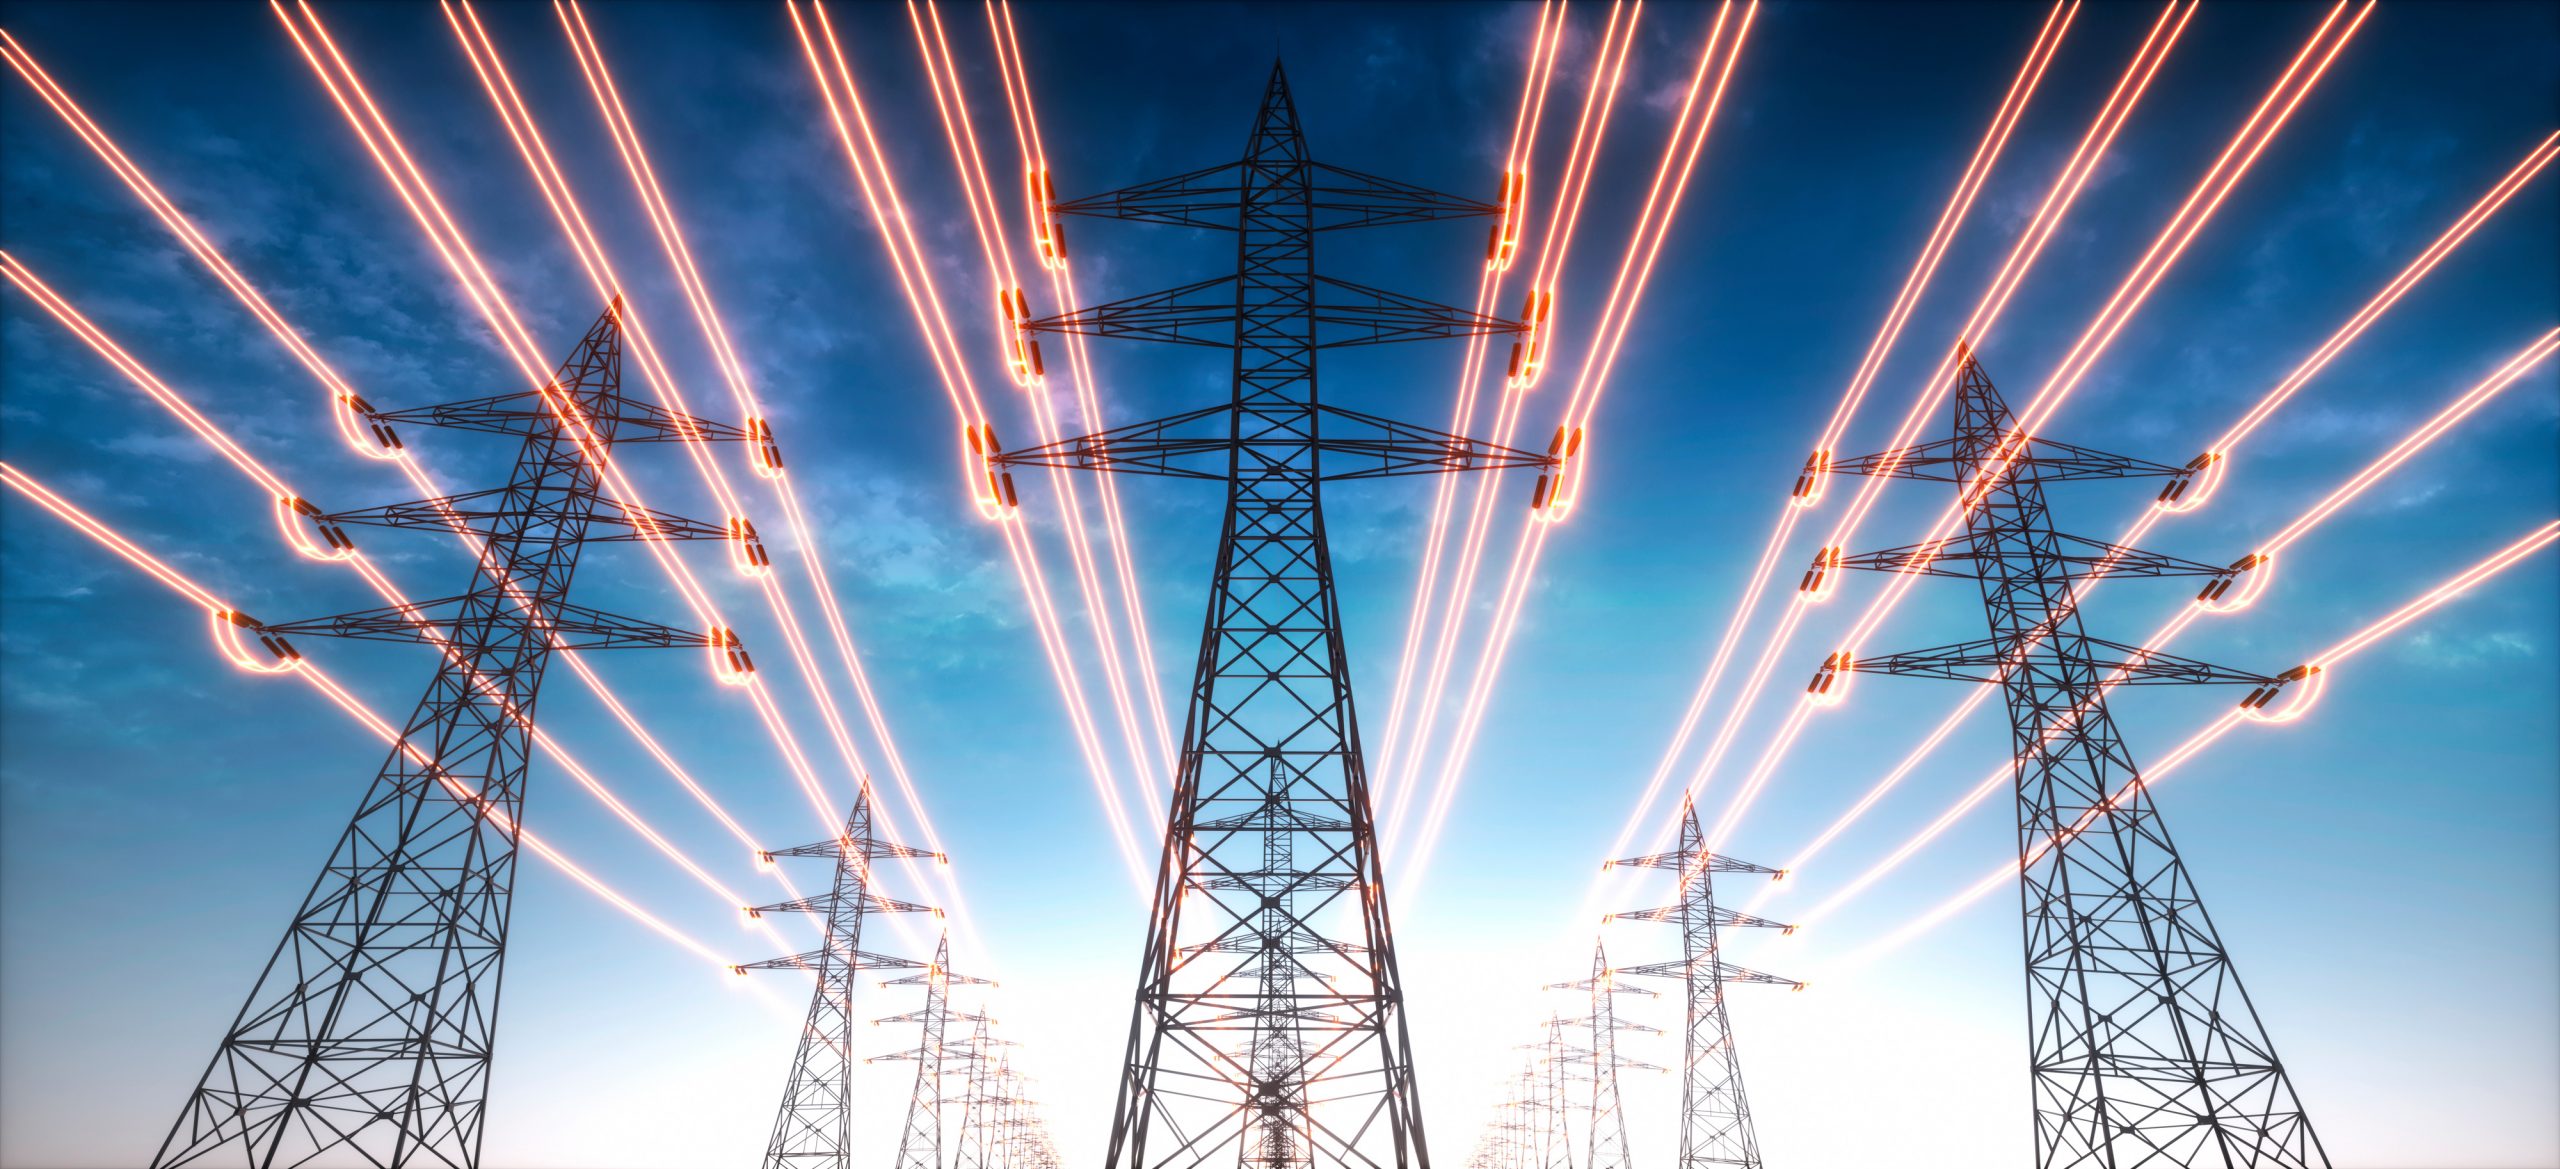 Stromübertragungsmasten mit leuchtenden Drähten vor blauem Himmel